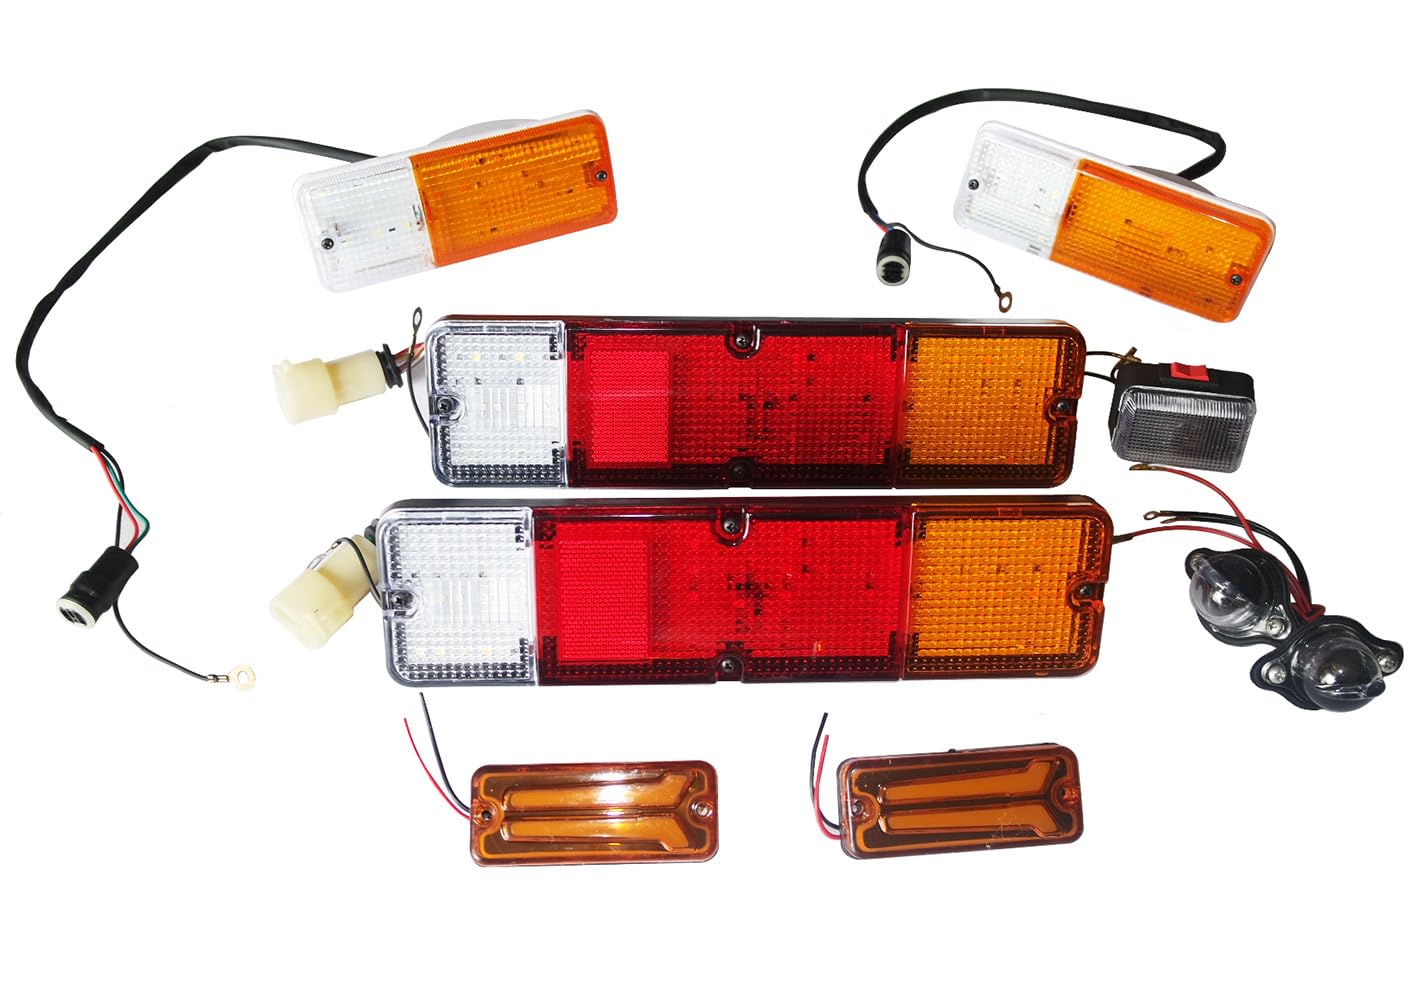 AEspares Blinklicht, Bremslicht, komplettes LED-Leuchten-Set, kompatibel mit Suzuki Samurai SJ410 SJ413 Jimny Sierra Gypsy von AEspares